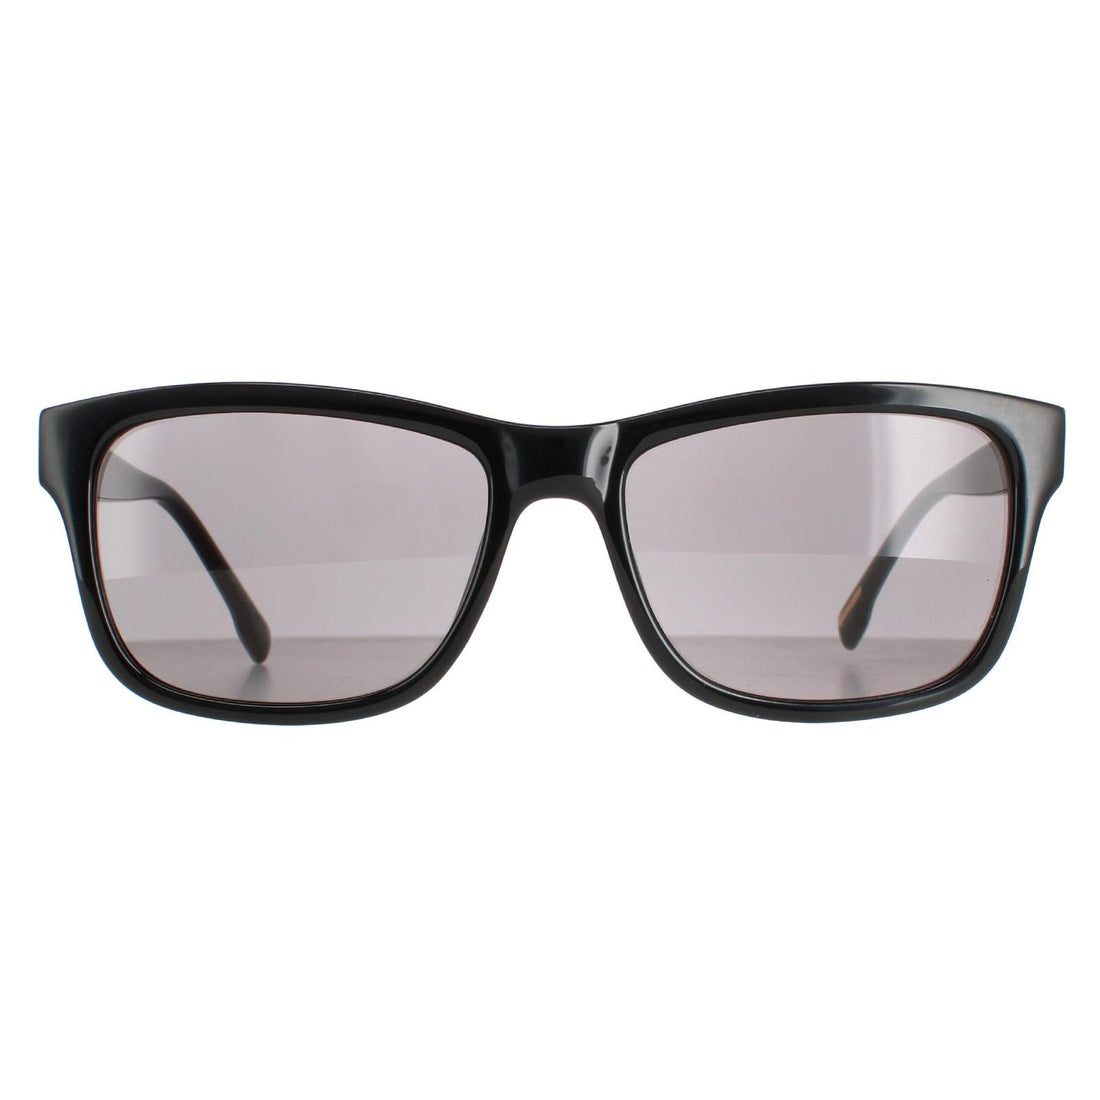 Ted Baker TB1455 Dane Sunglasses Polished Black Patterned Grey